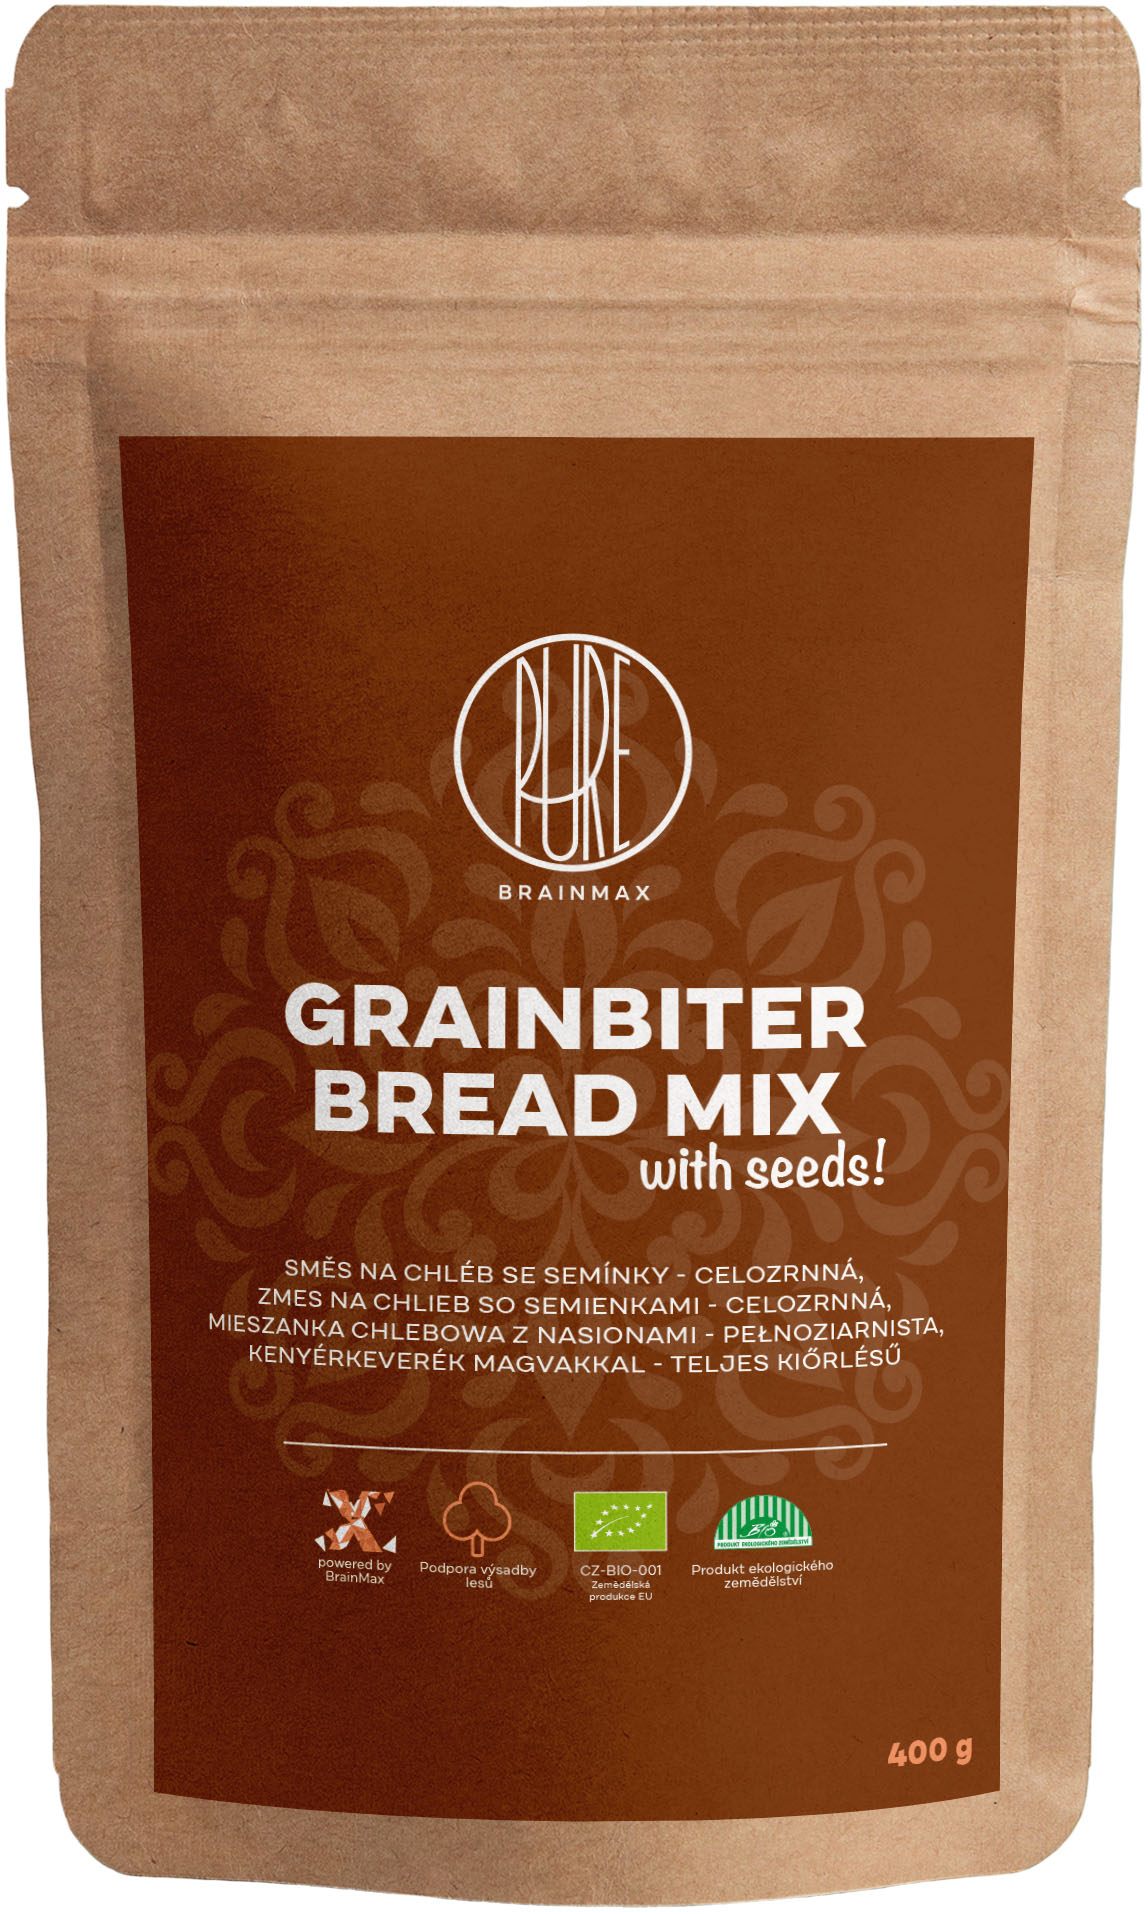 BrainMax Pure Směs na chléb se semínky, celozrnná, 400 g, BIO *CZ-BIO-001 certifikát